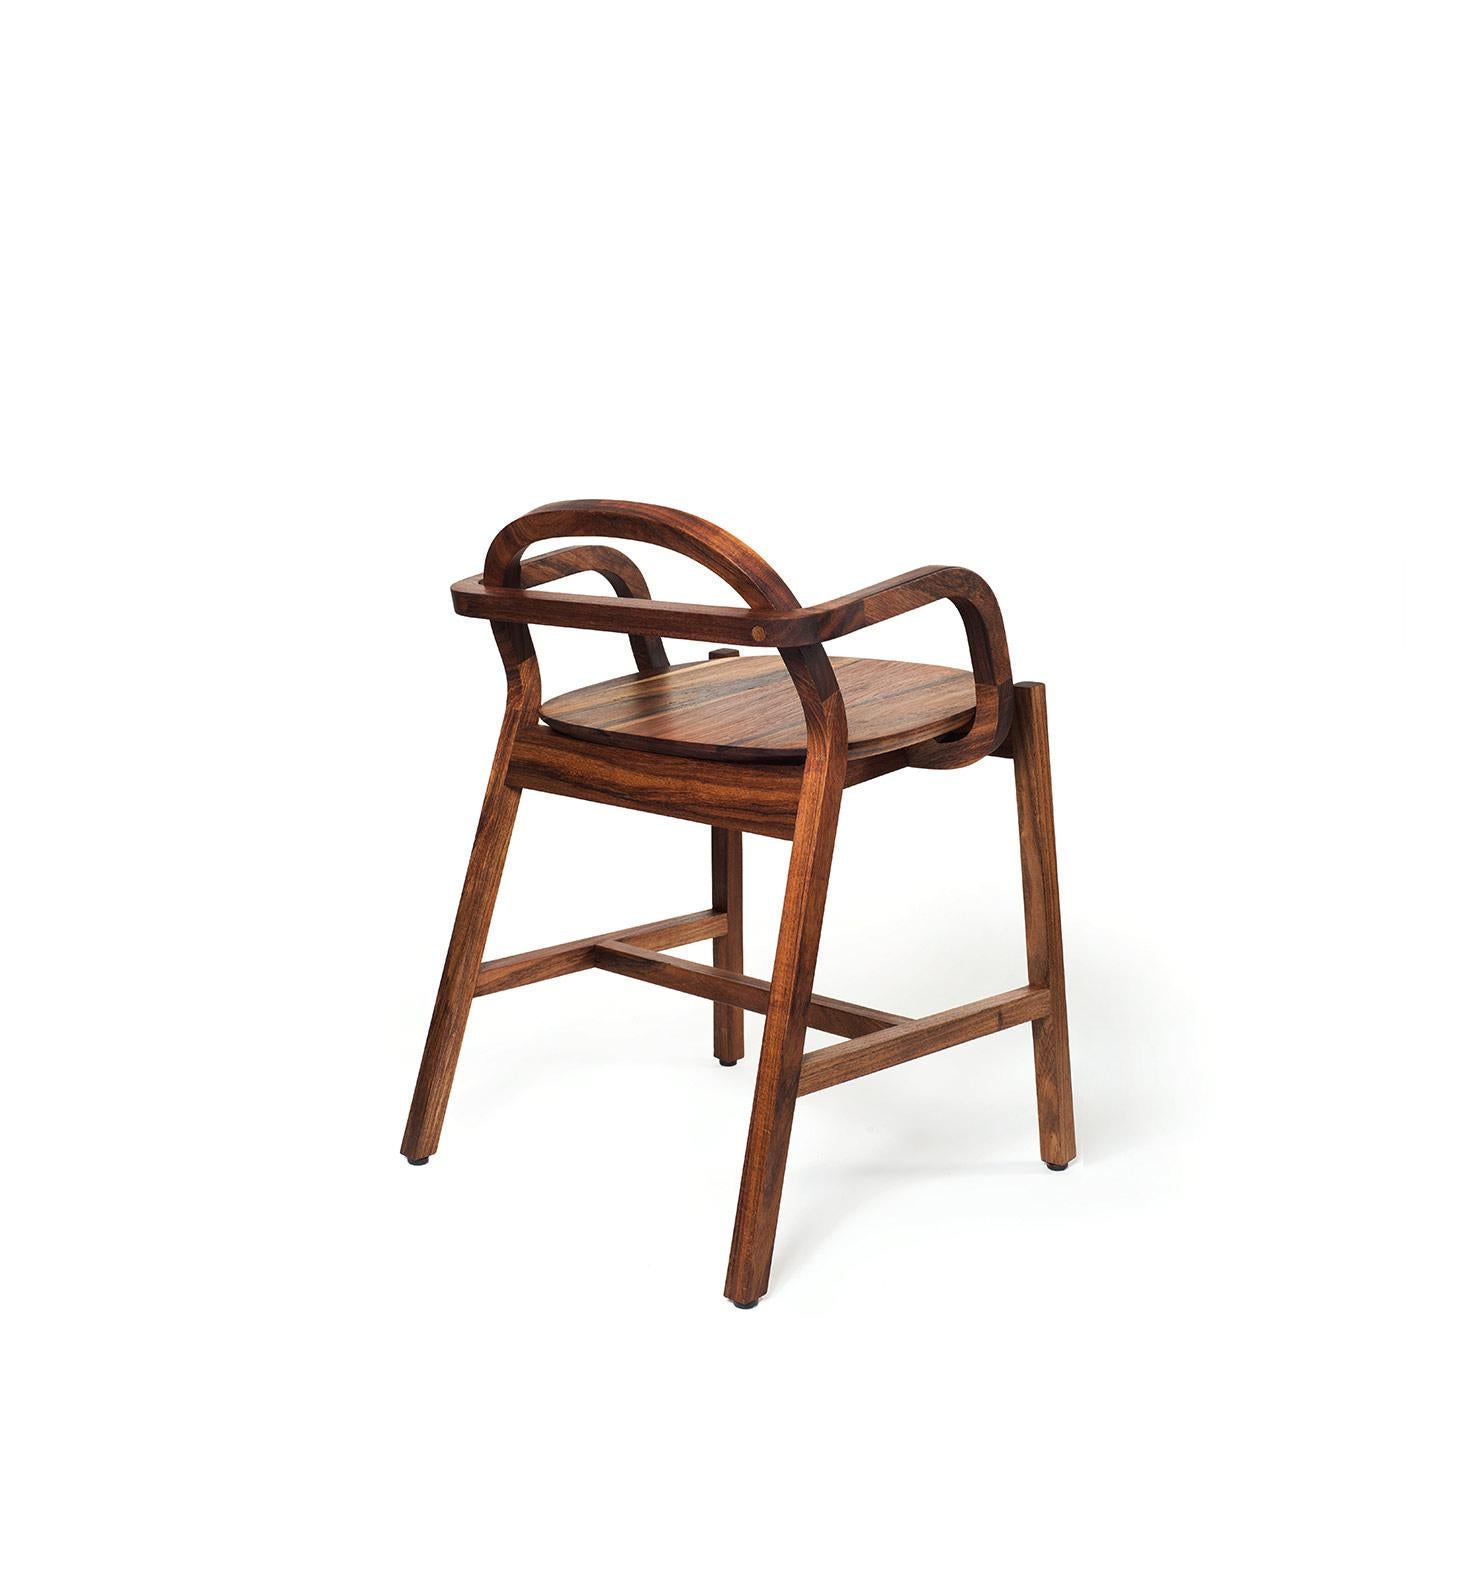 Der Tono Cs Chair ist aus der wellenförmigen Qualität von Schallwellen entstanden, die uns mit fluktuierenden Formen beschenken können. Die Tono-Linie von Cuchara macht sich dieses Frequenzkonzept zu eigen und erforscht die linearen Wege, die die